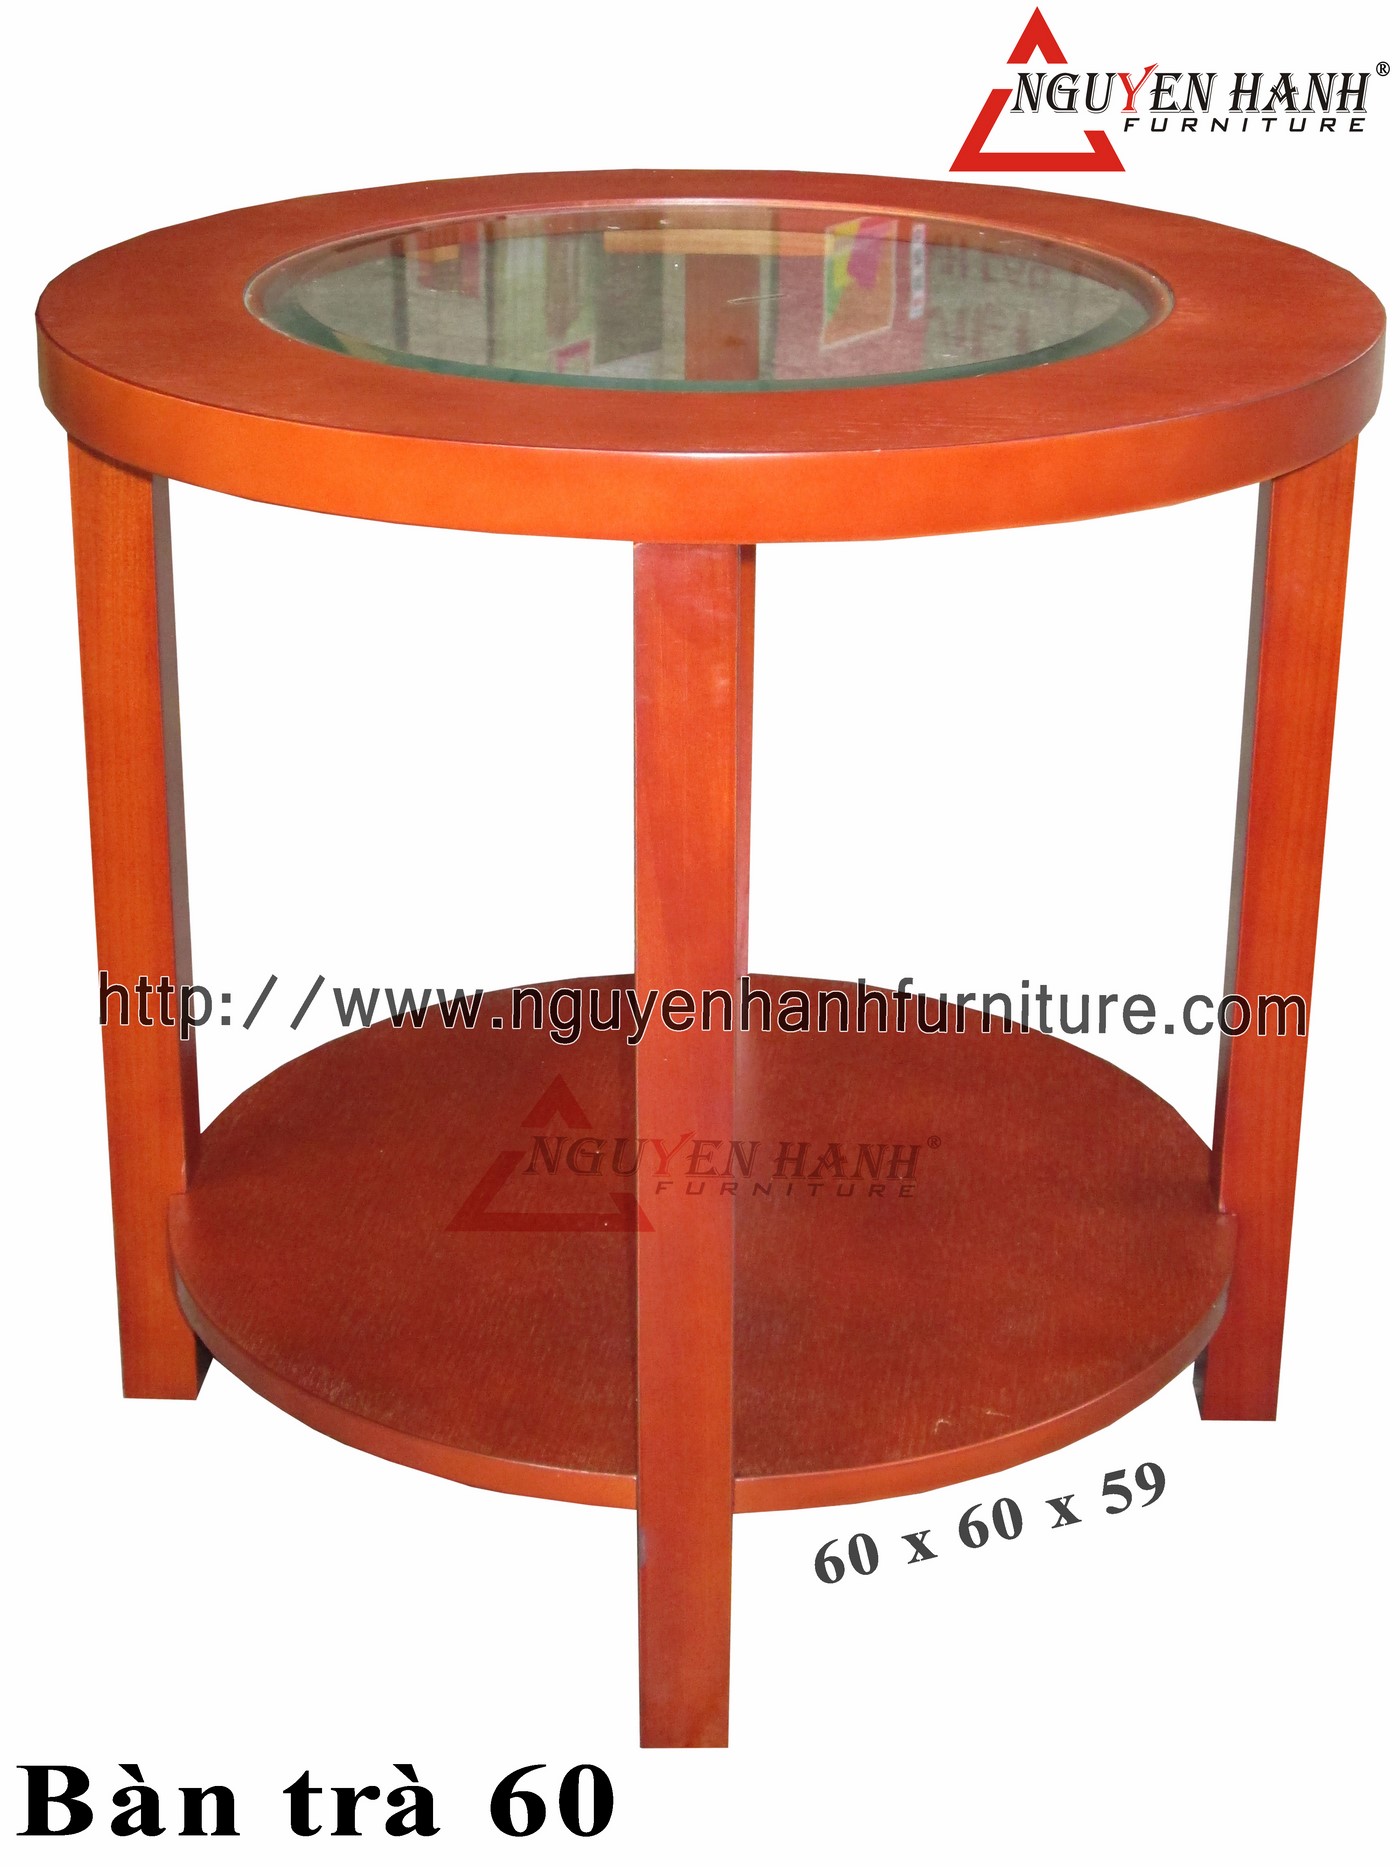 Name product: Tea table 60 - Dimensions: 60 x 60 x 59 (H) - Description: 